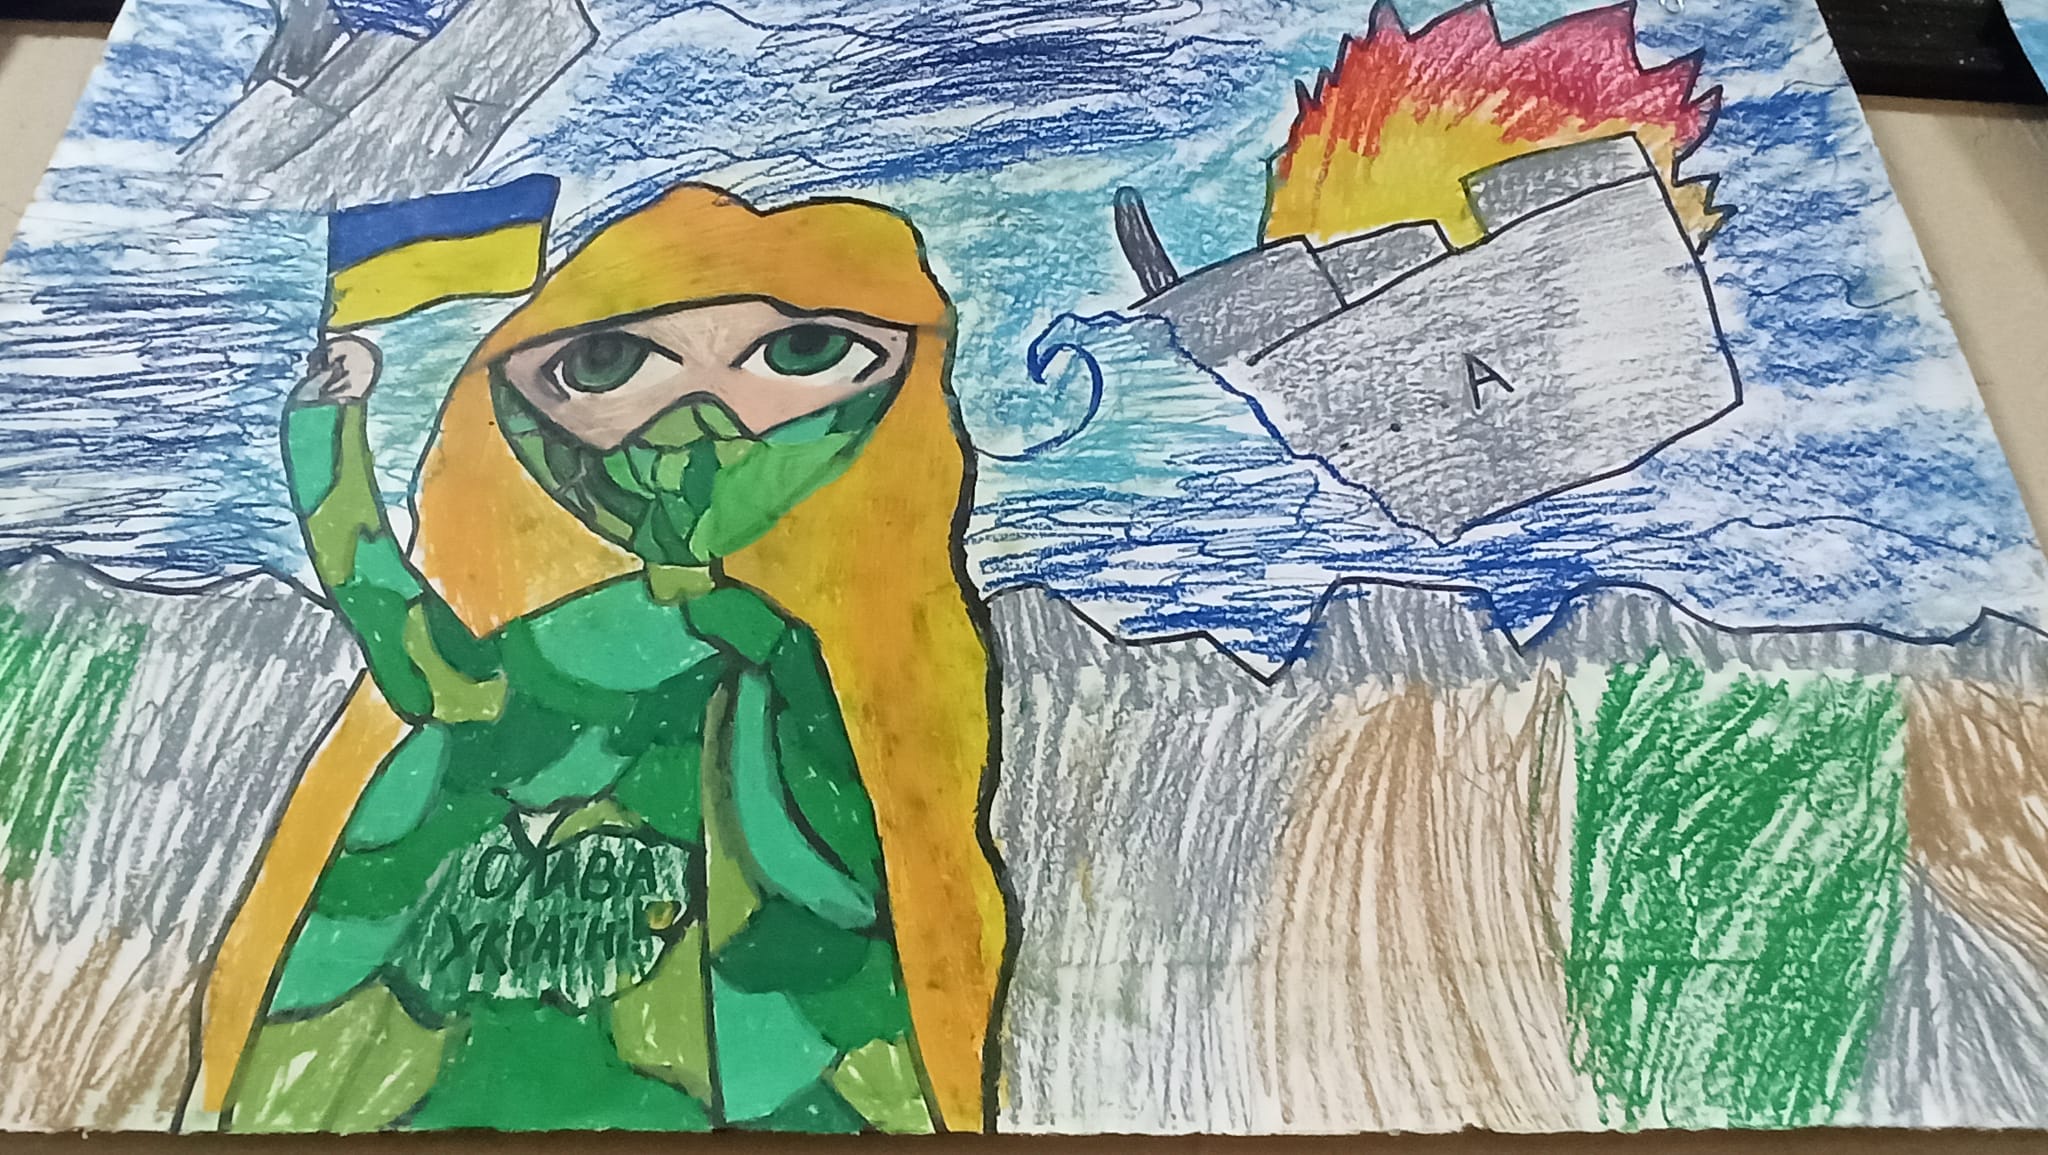 Війна очима дітей: у Кілійській школі мистецтв відкрилася виставка до Дня ЗСУ